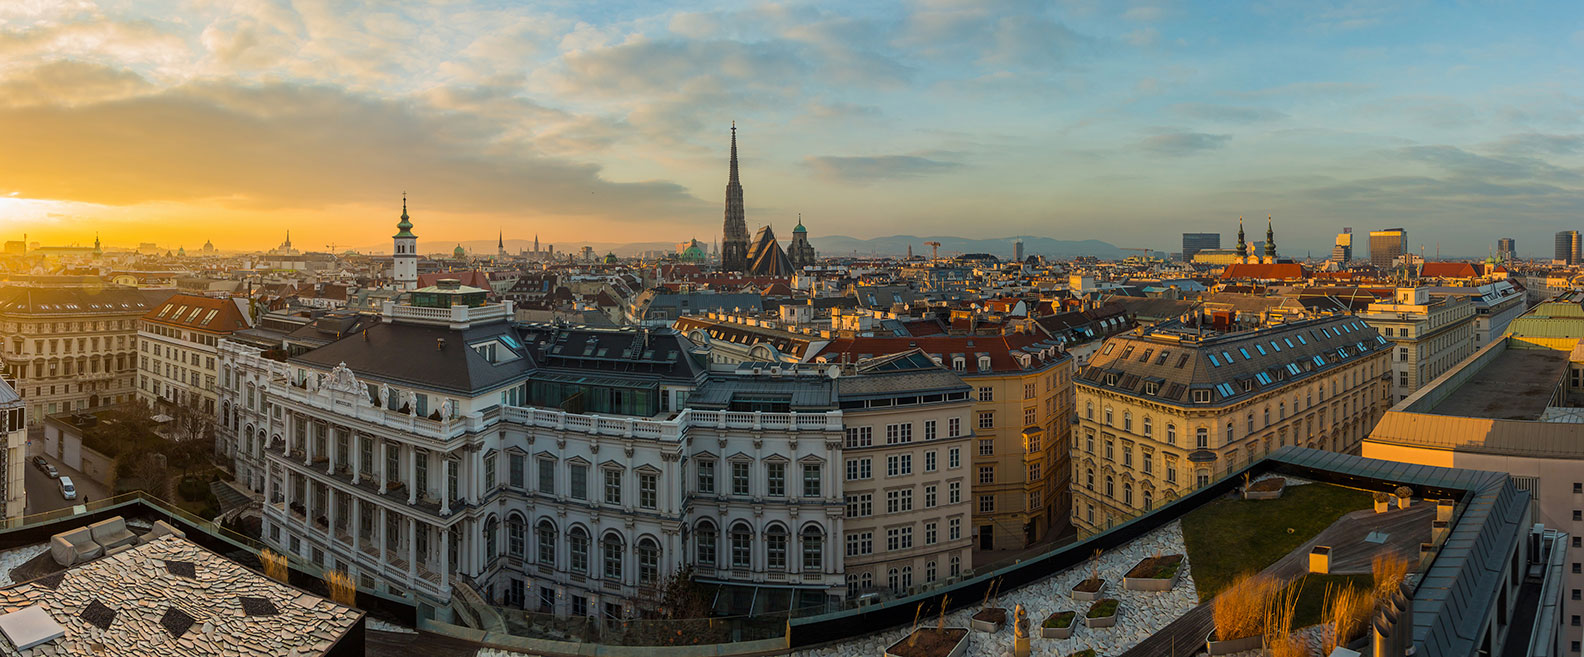 Sunset in Vienna